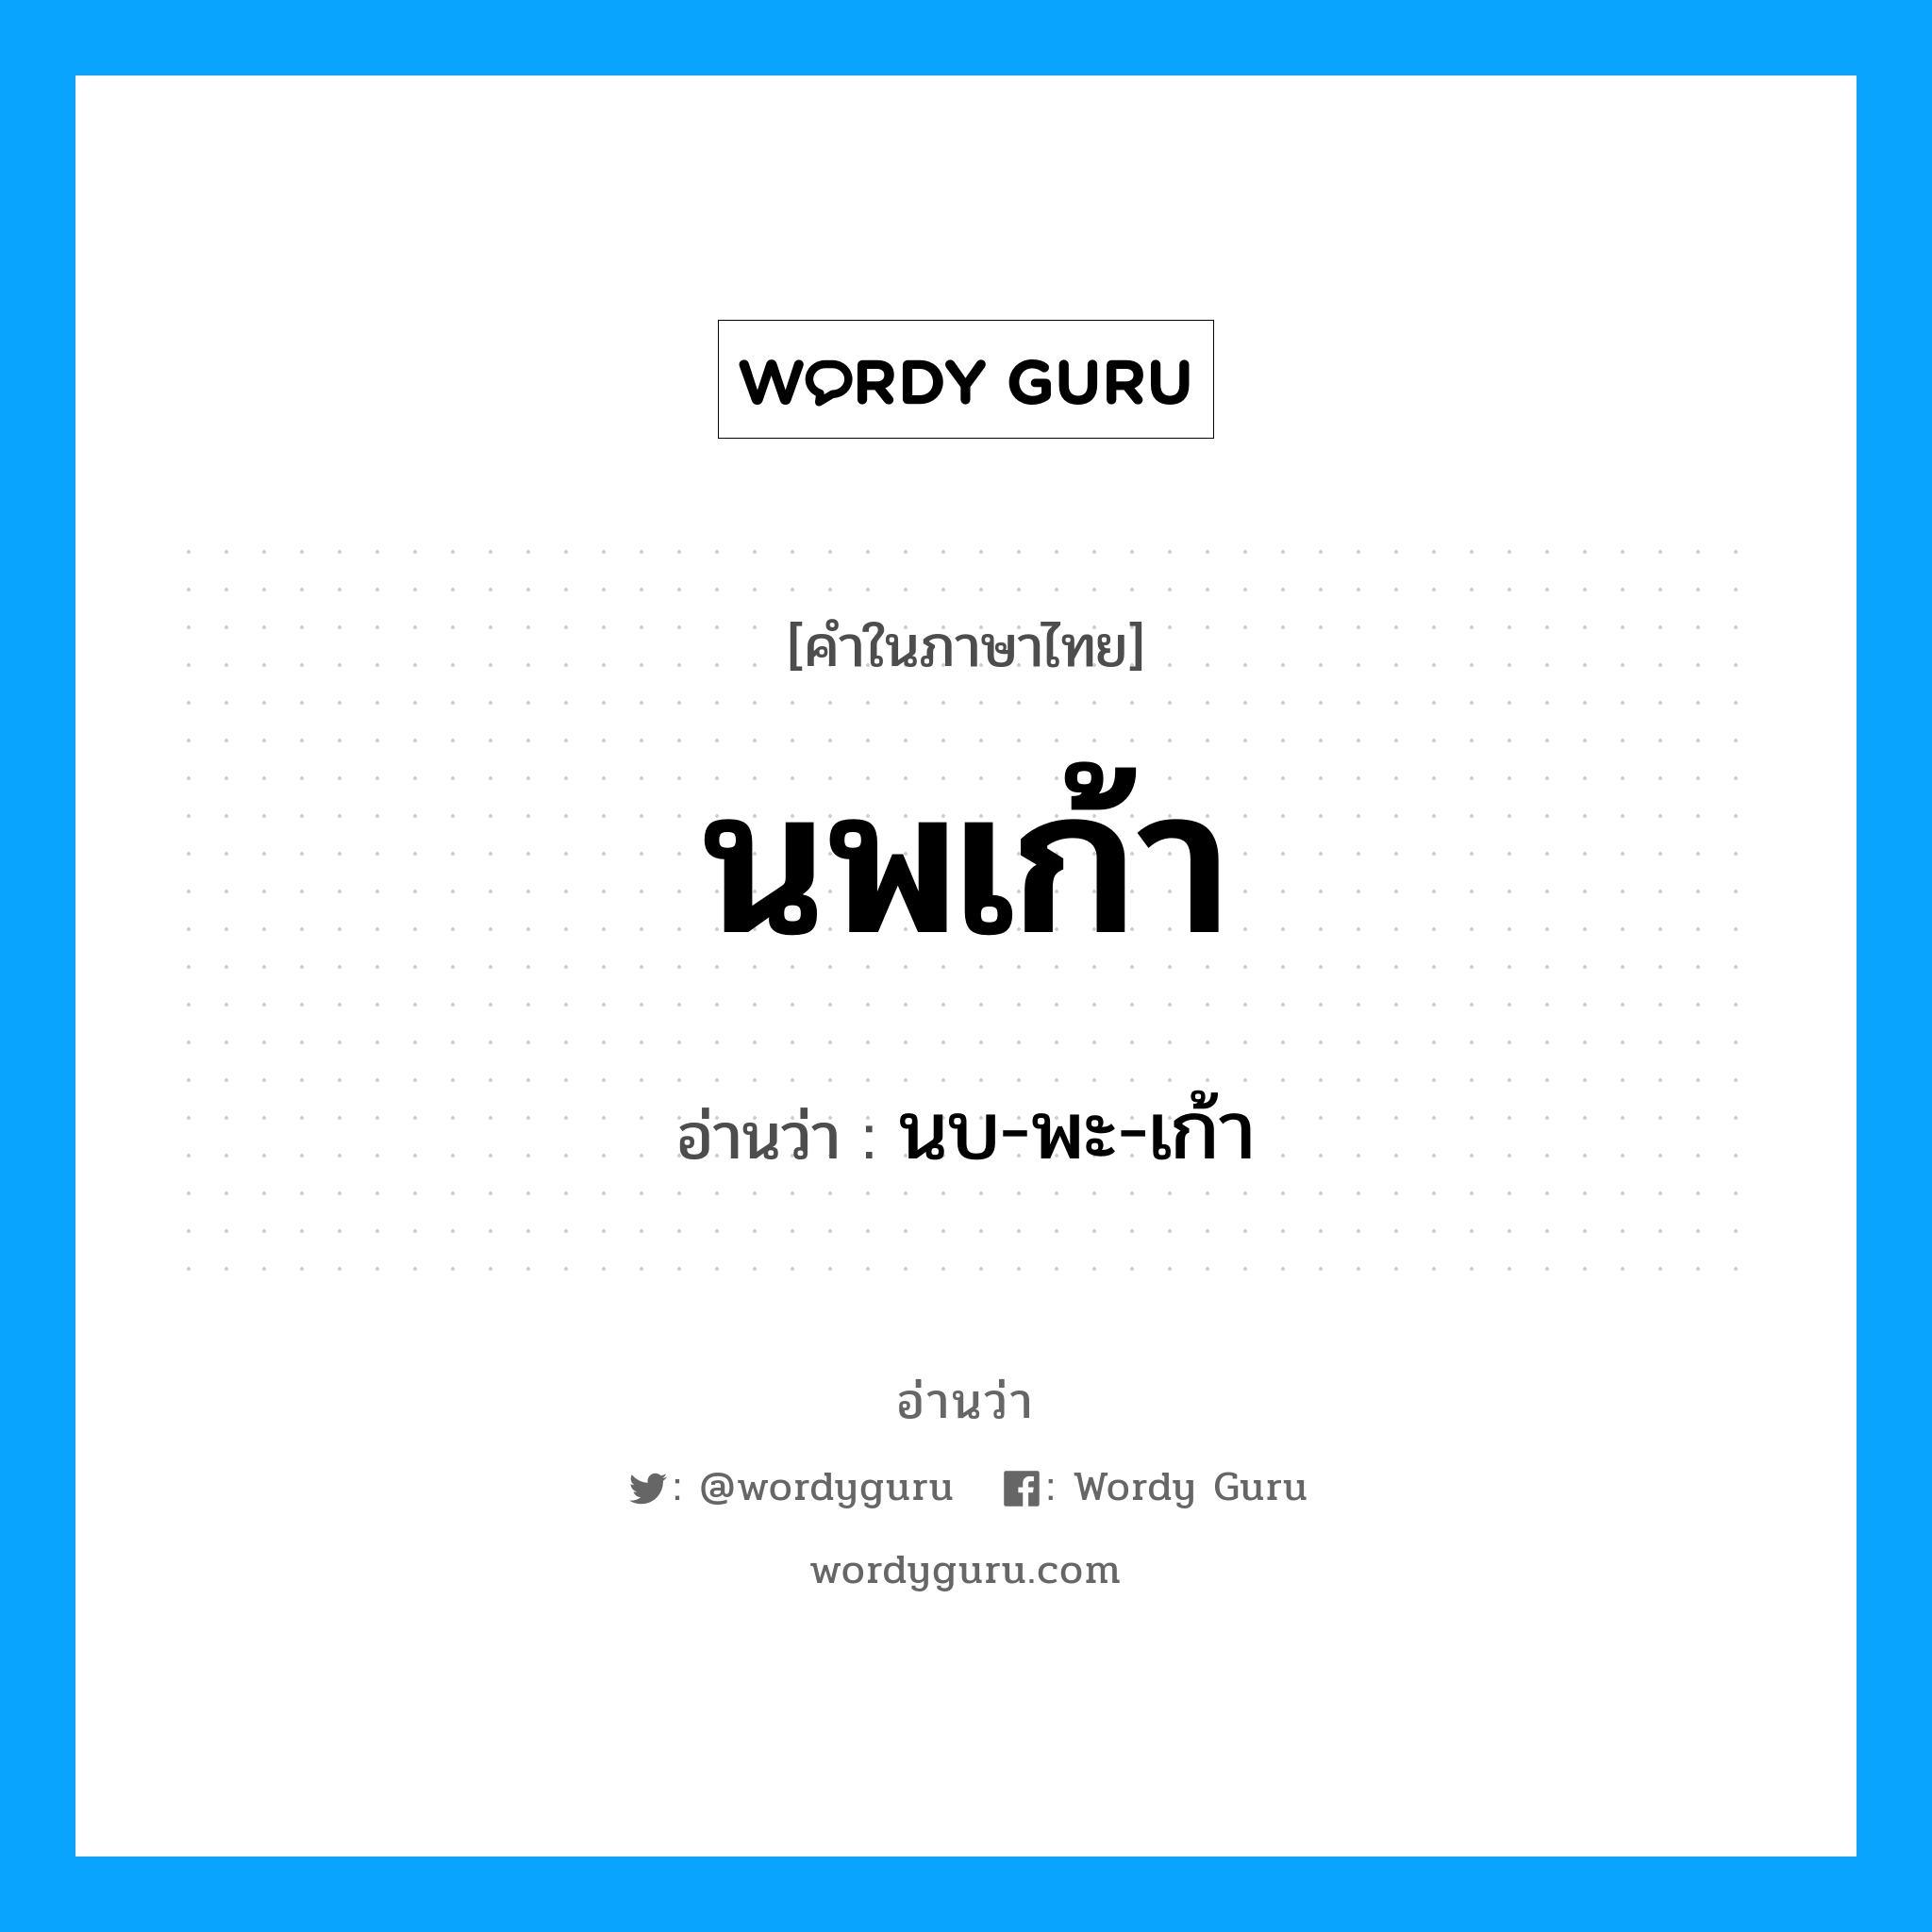 นบ-พะ-เก้า เป็นคำอ่านของคำไหน?, คำในภาษาไทย นบ-พะ-เก้า อ่านว่า นพเก้า